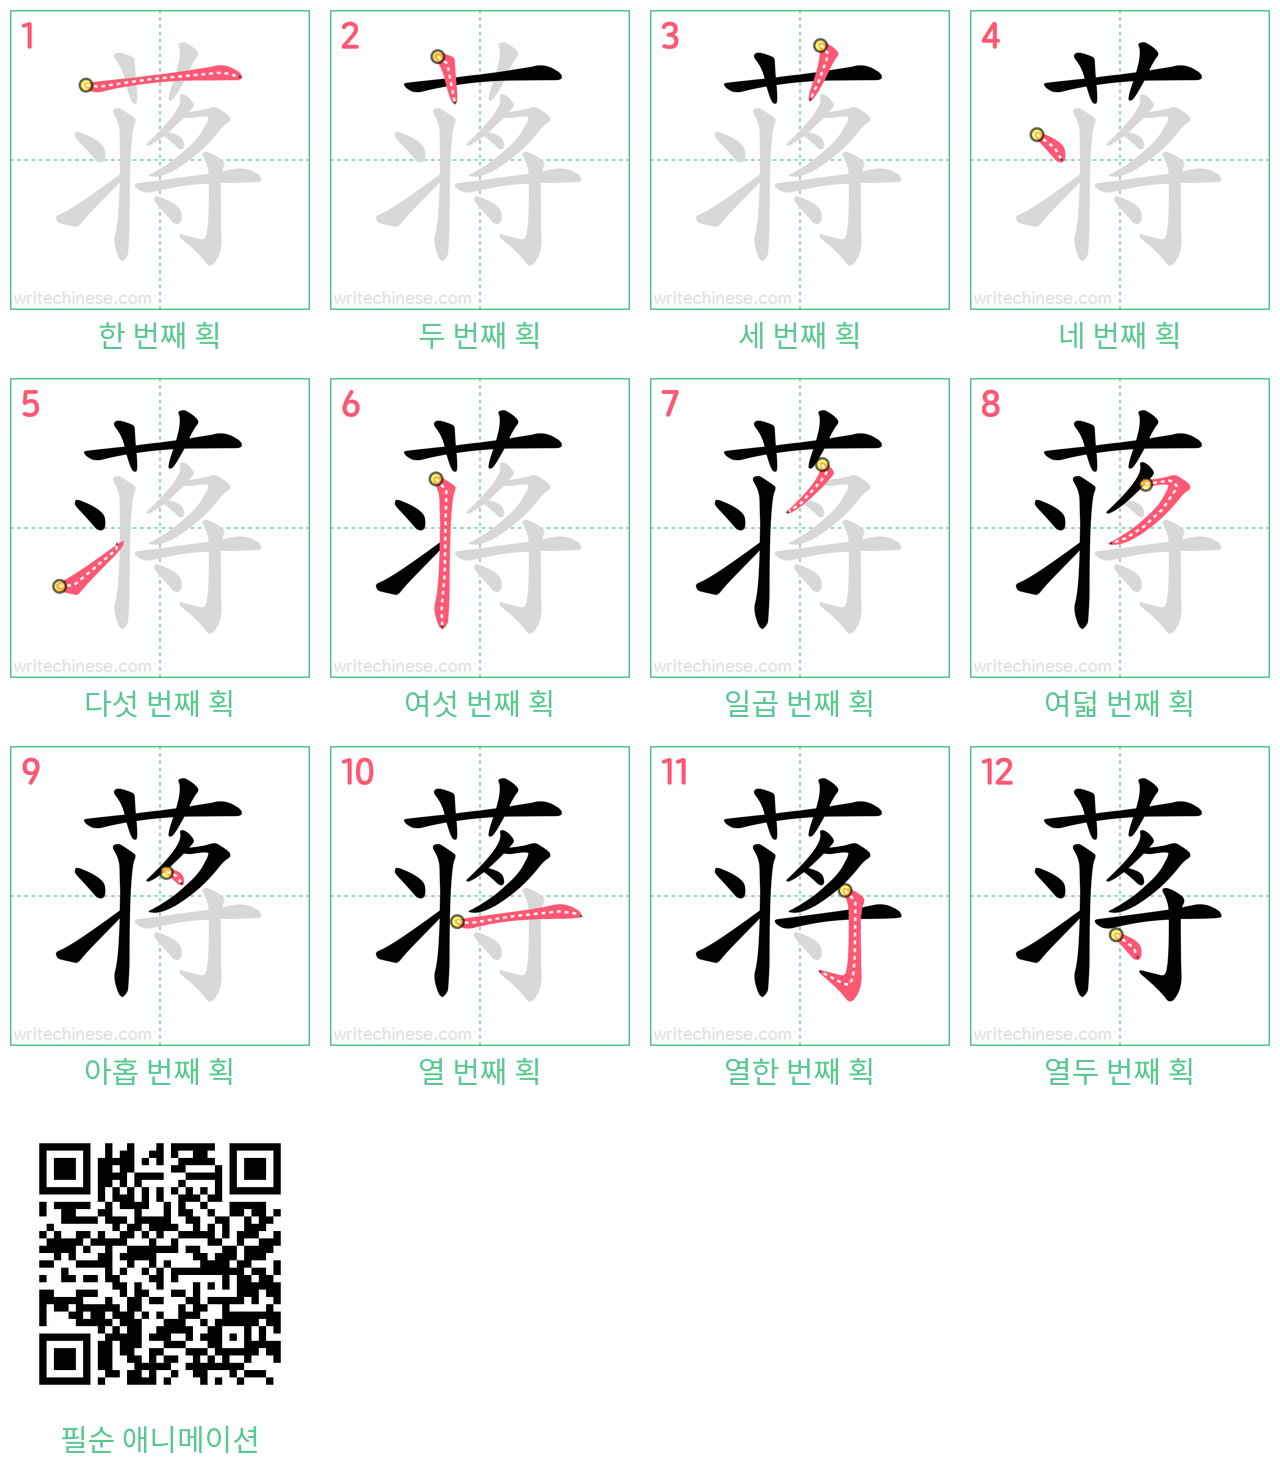 蒋 step-by-step stroke order diagrams